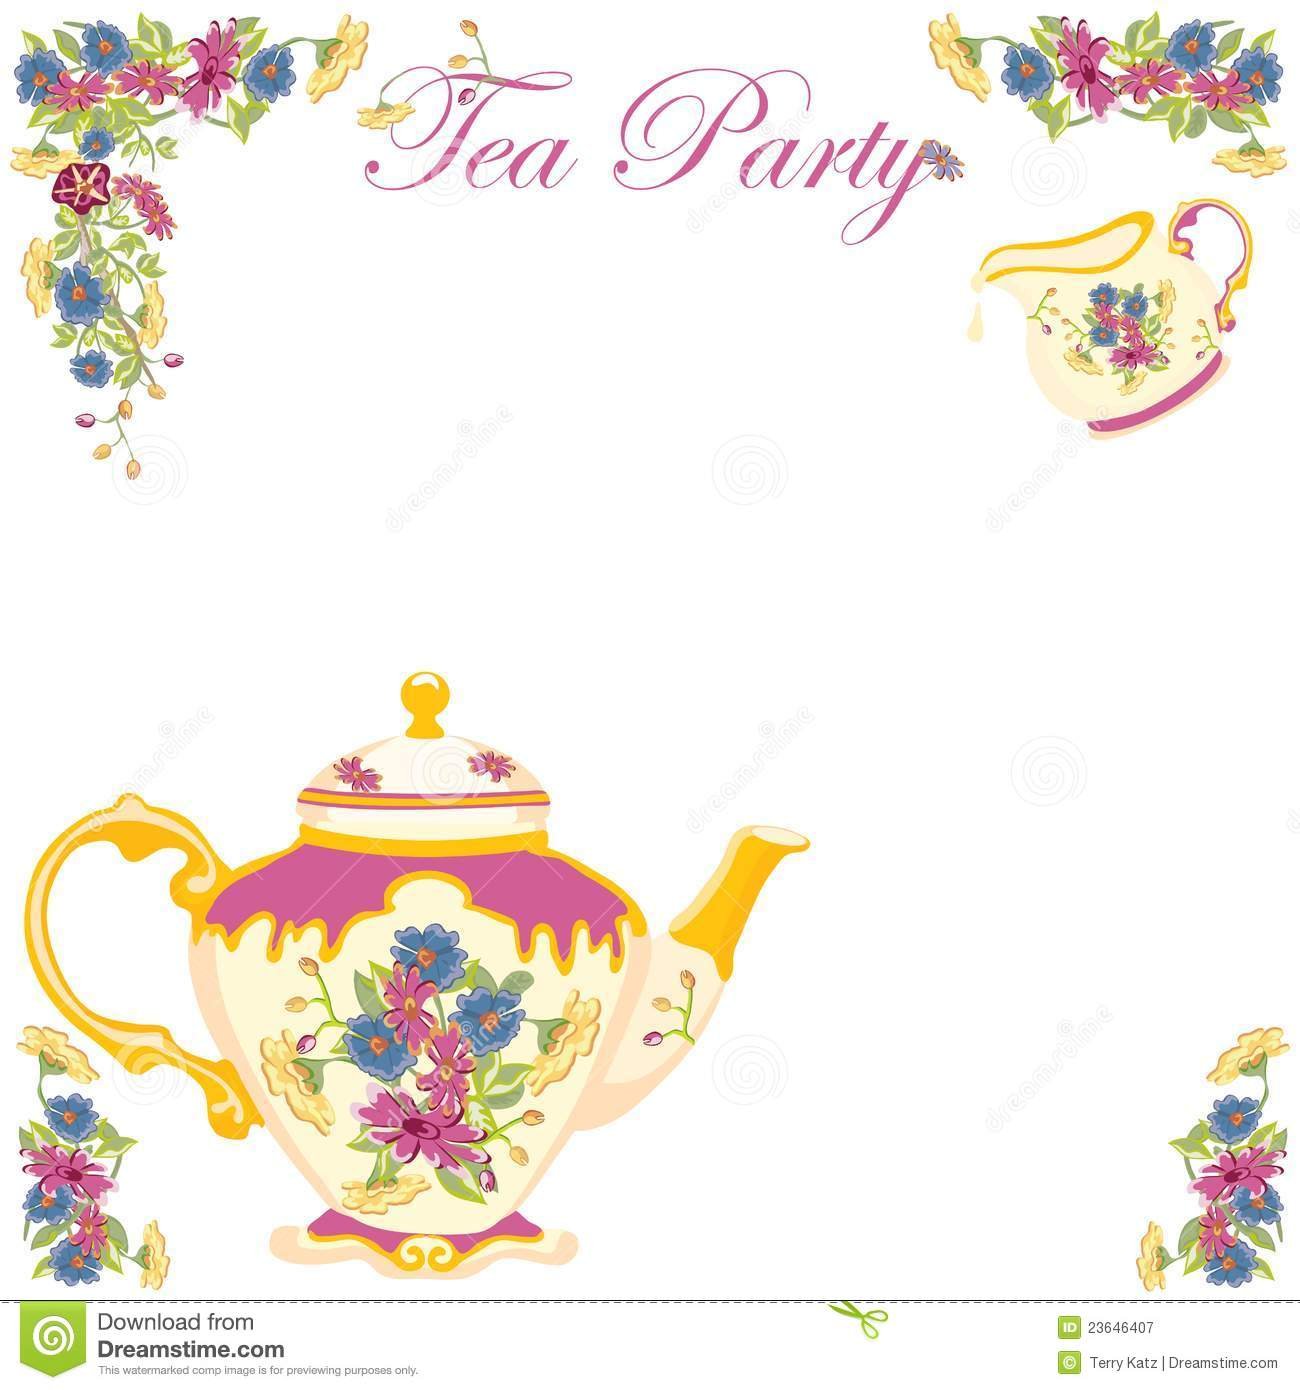 Tea Party Invitations â Gangcraft Net